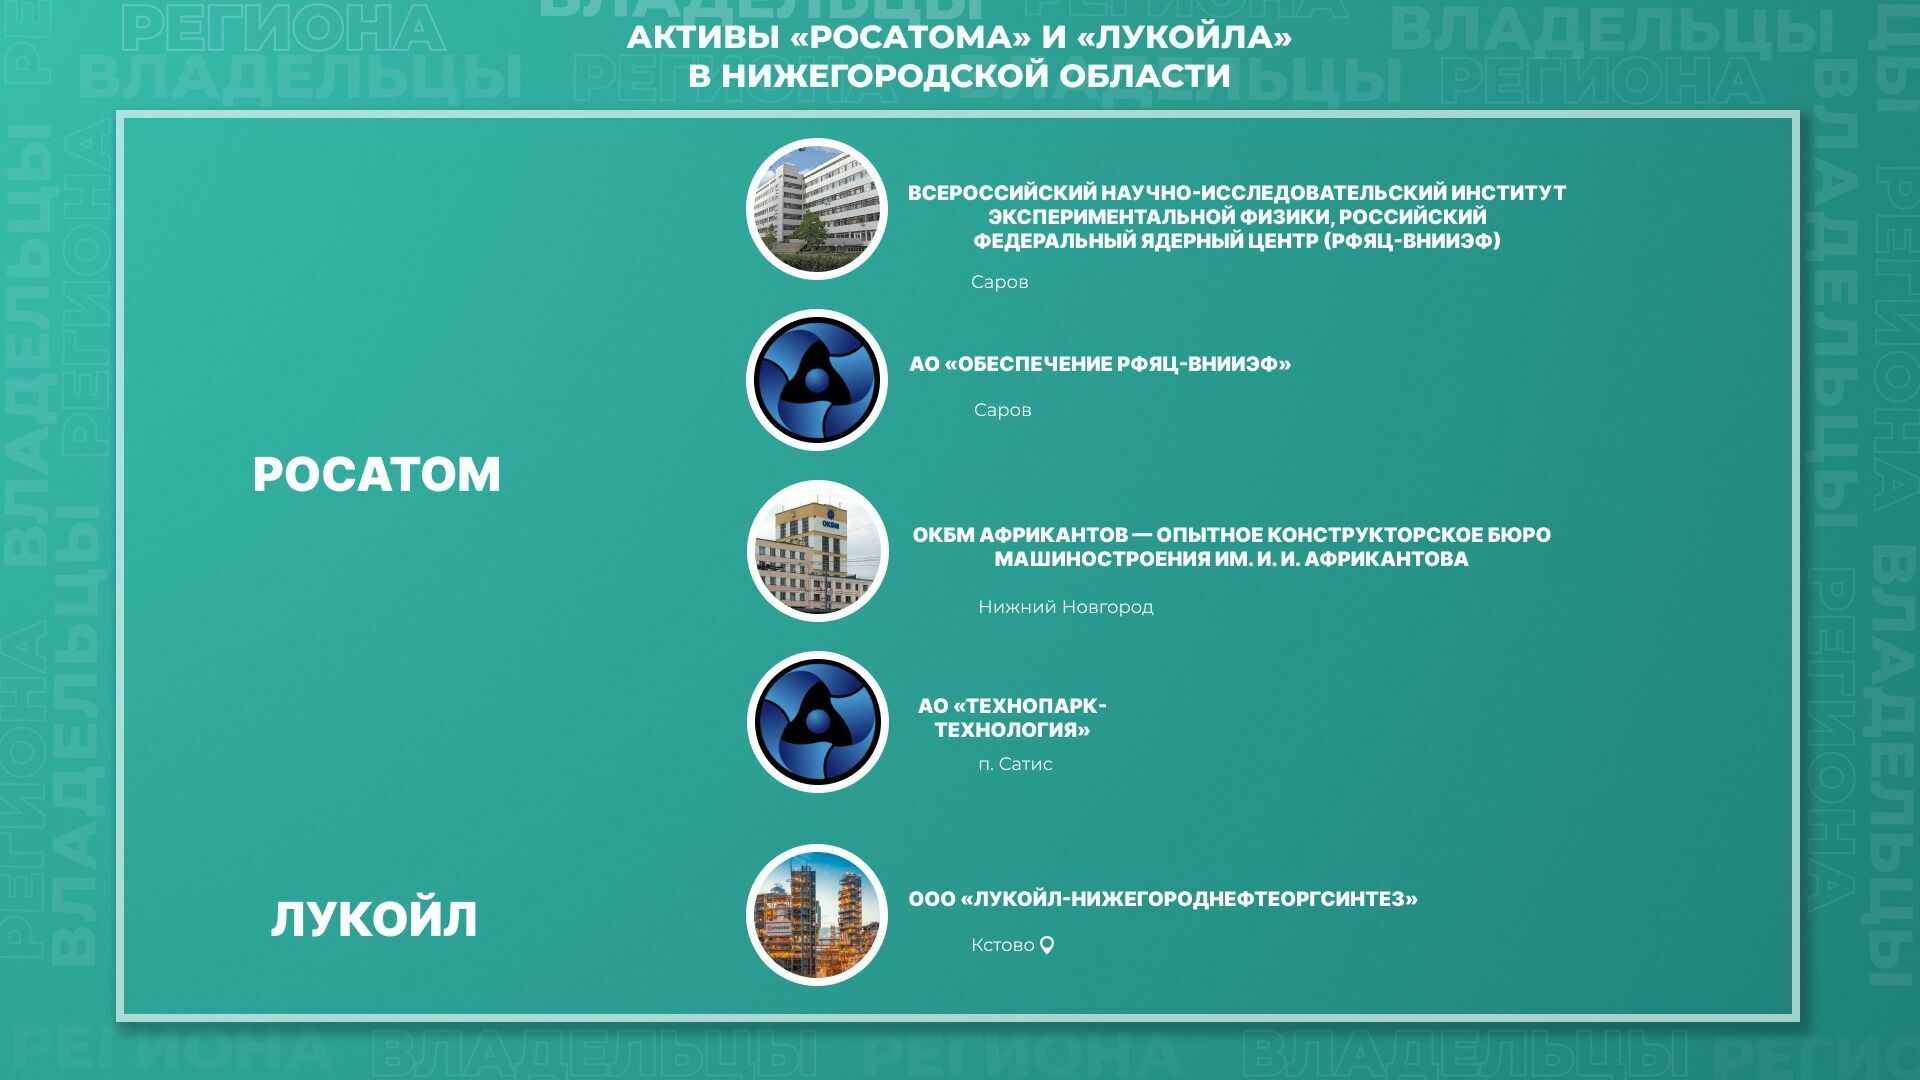 Активы "Росатома" и "Лукойла" в Нижегородской области